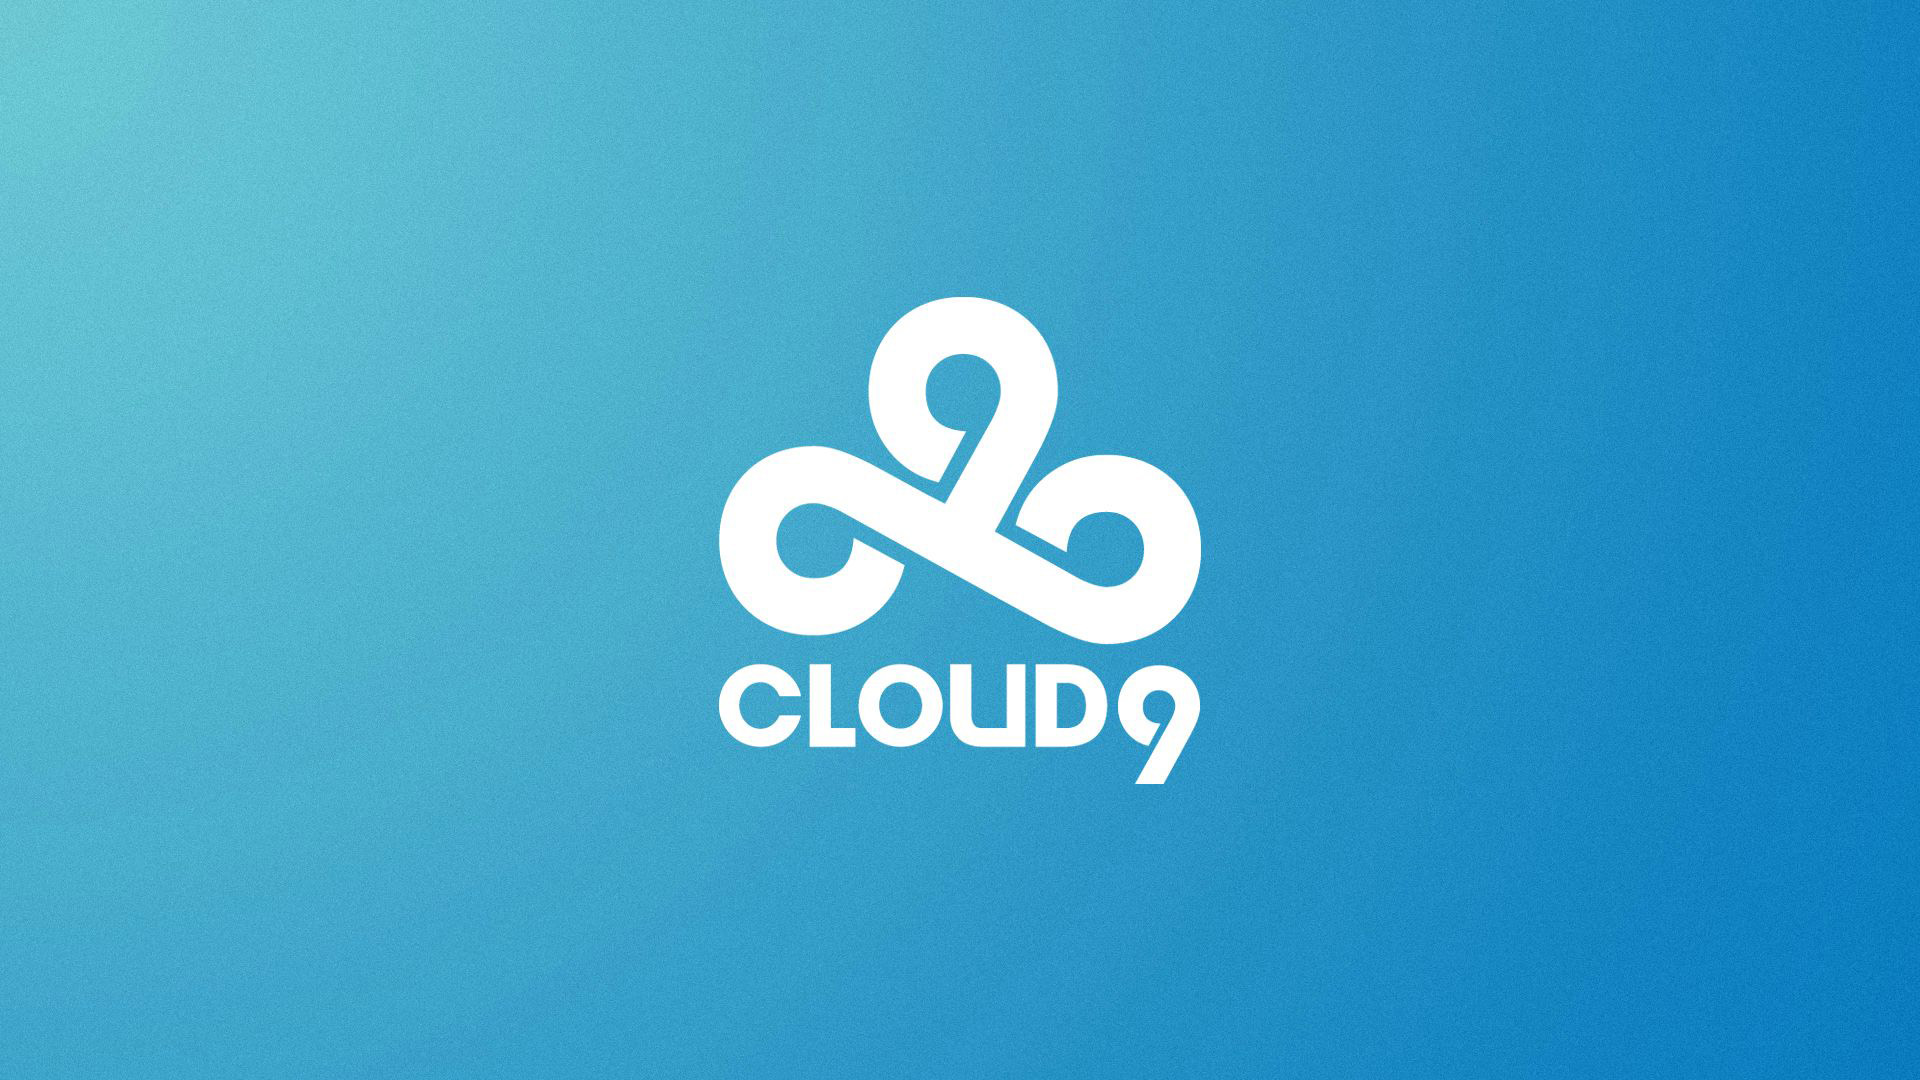 25 Cloud9 Wallpapers - BC-GB - Gaming & Esports News & Blog
